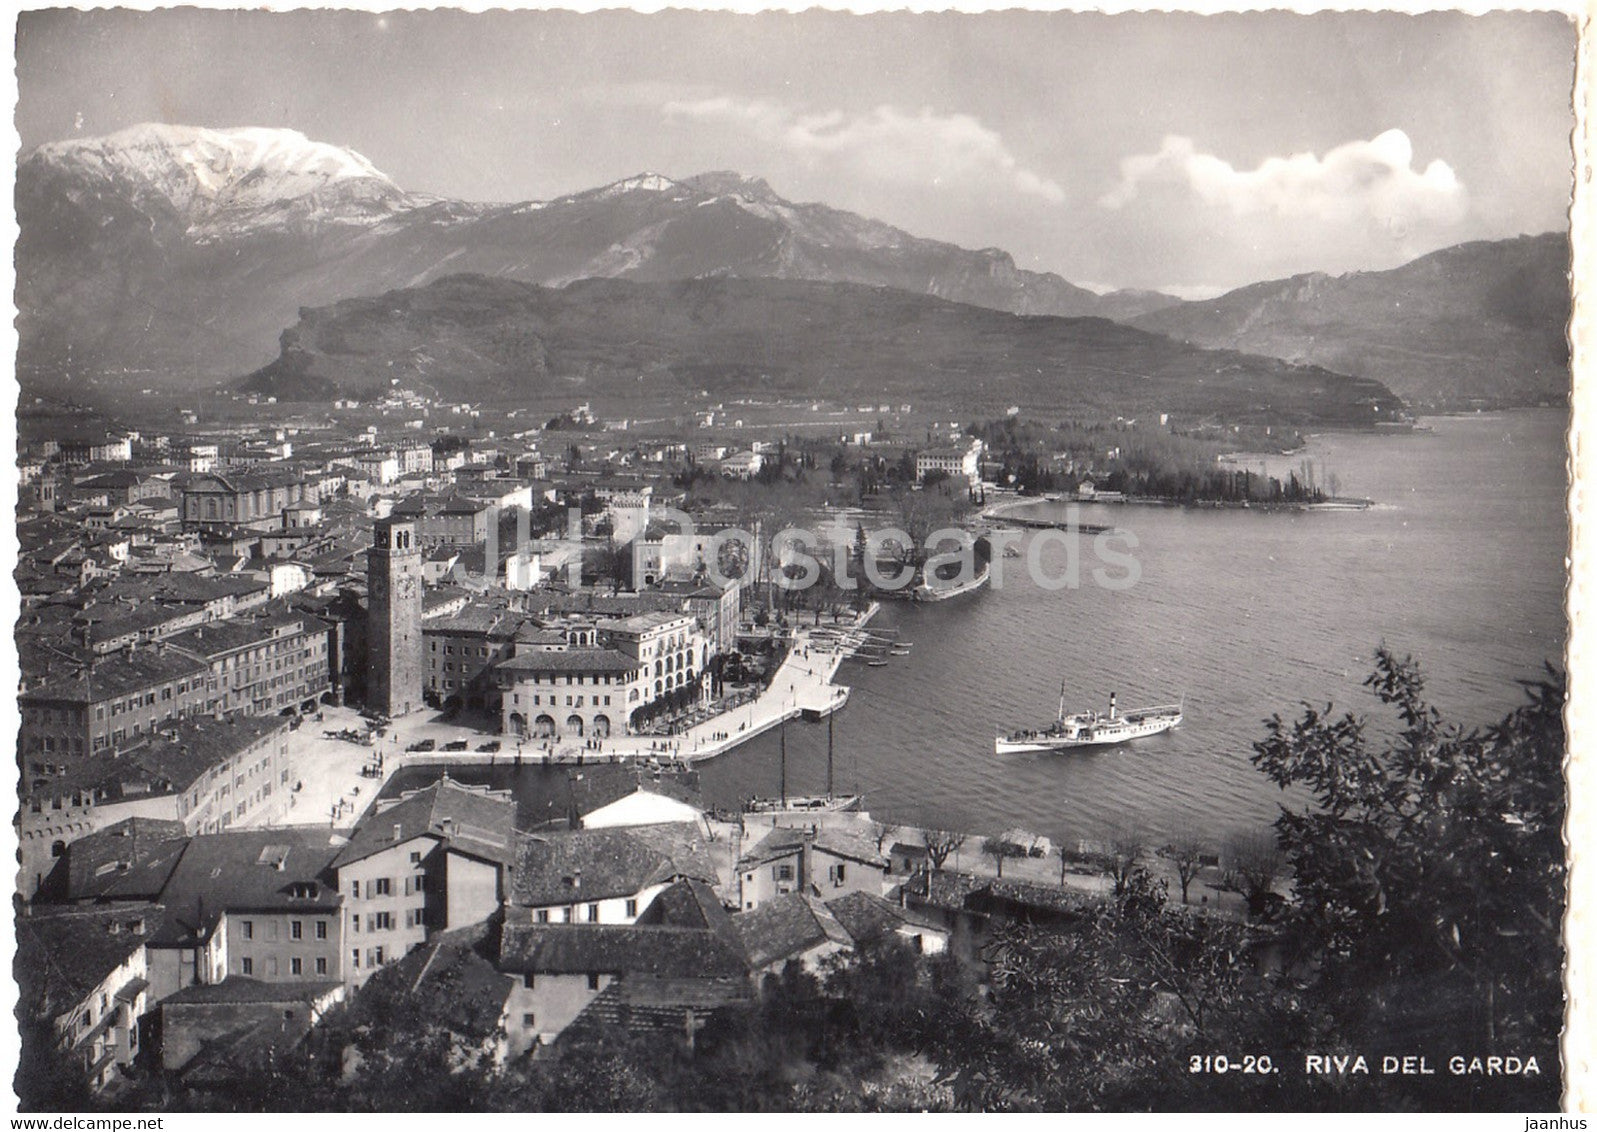 Riva del Garda - ship - 310 20 - old postcard - 1948 - Italy - used - JH Postcards